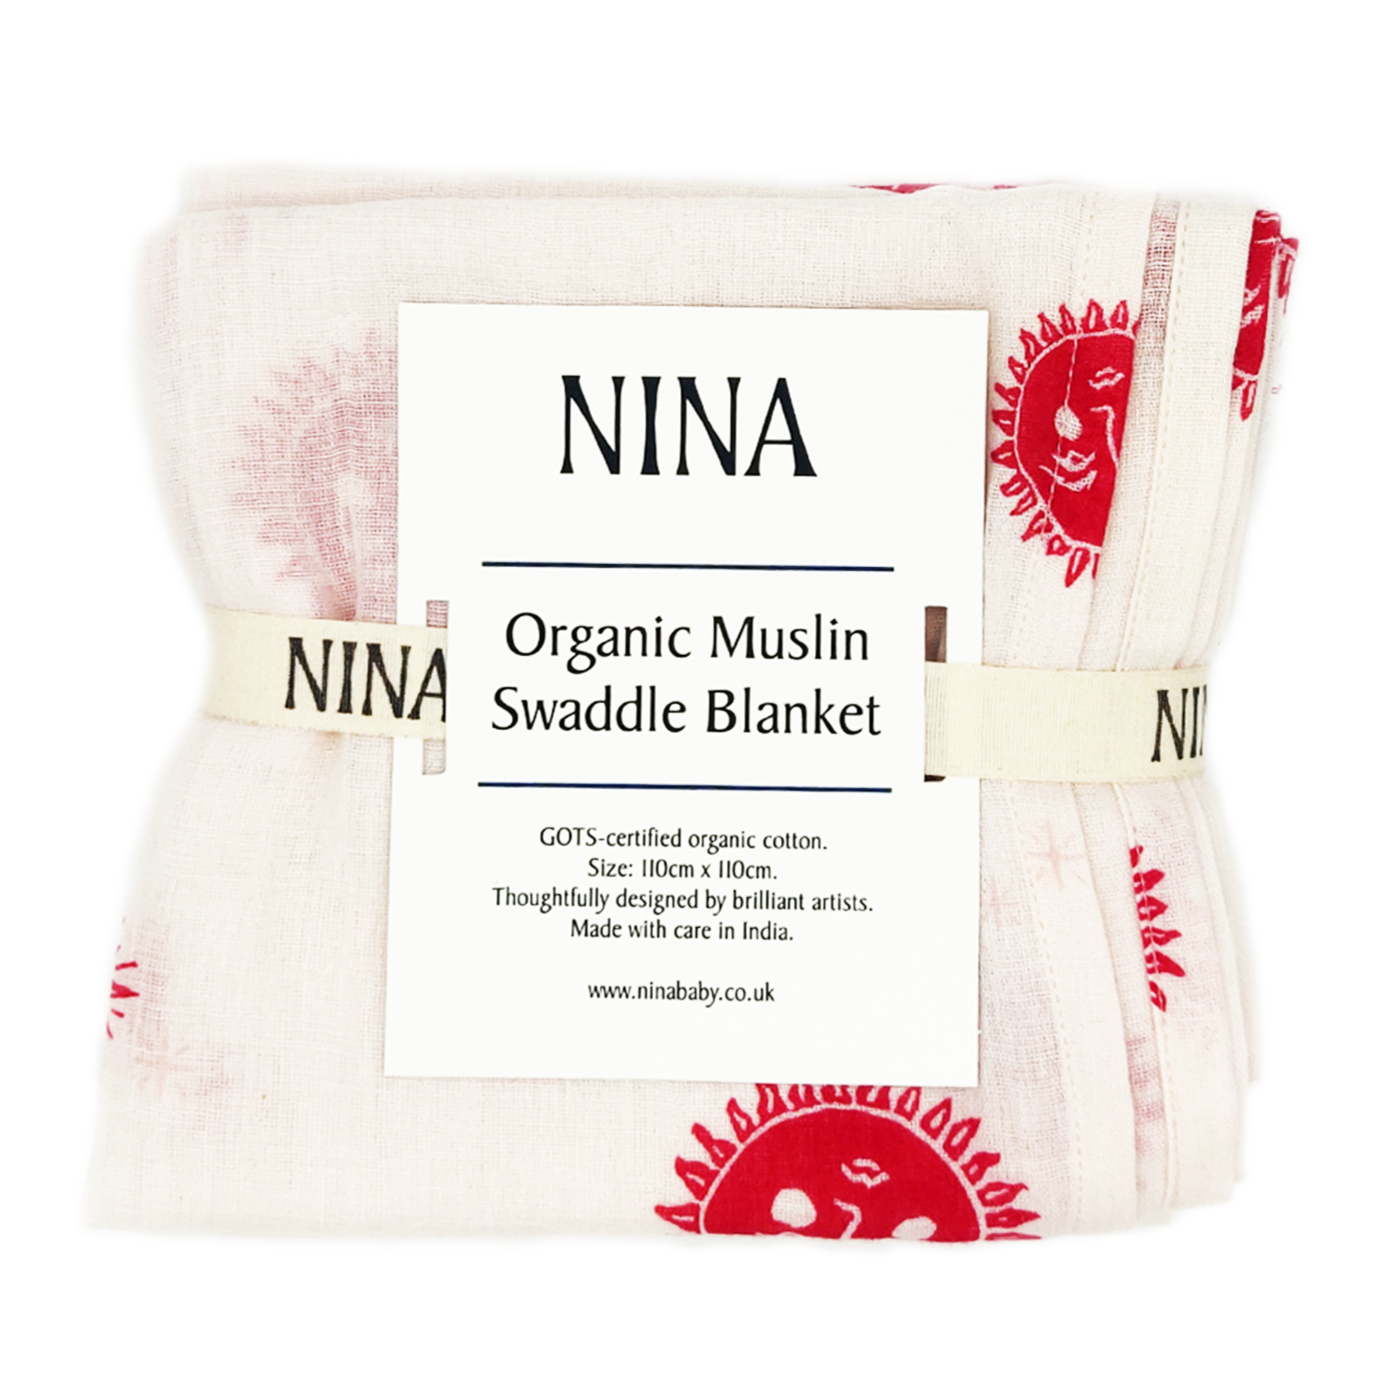 Organic large muslin blanket for babies, in packaging